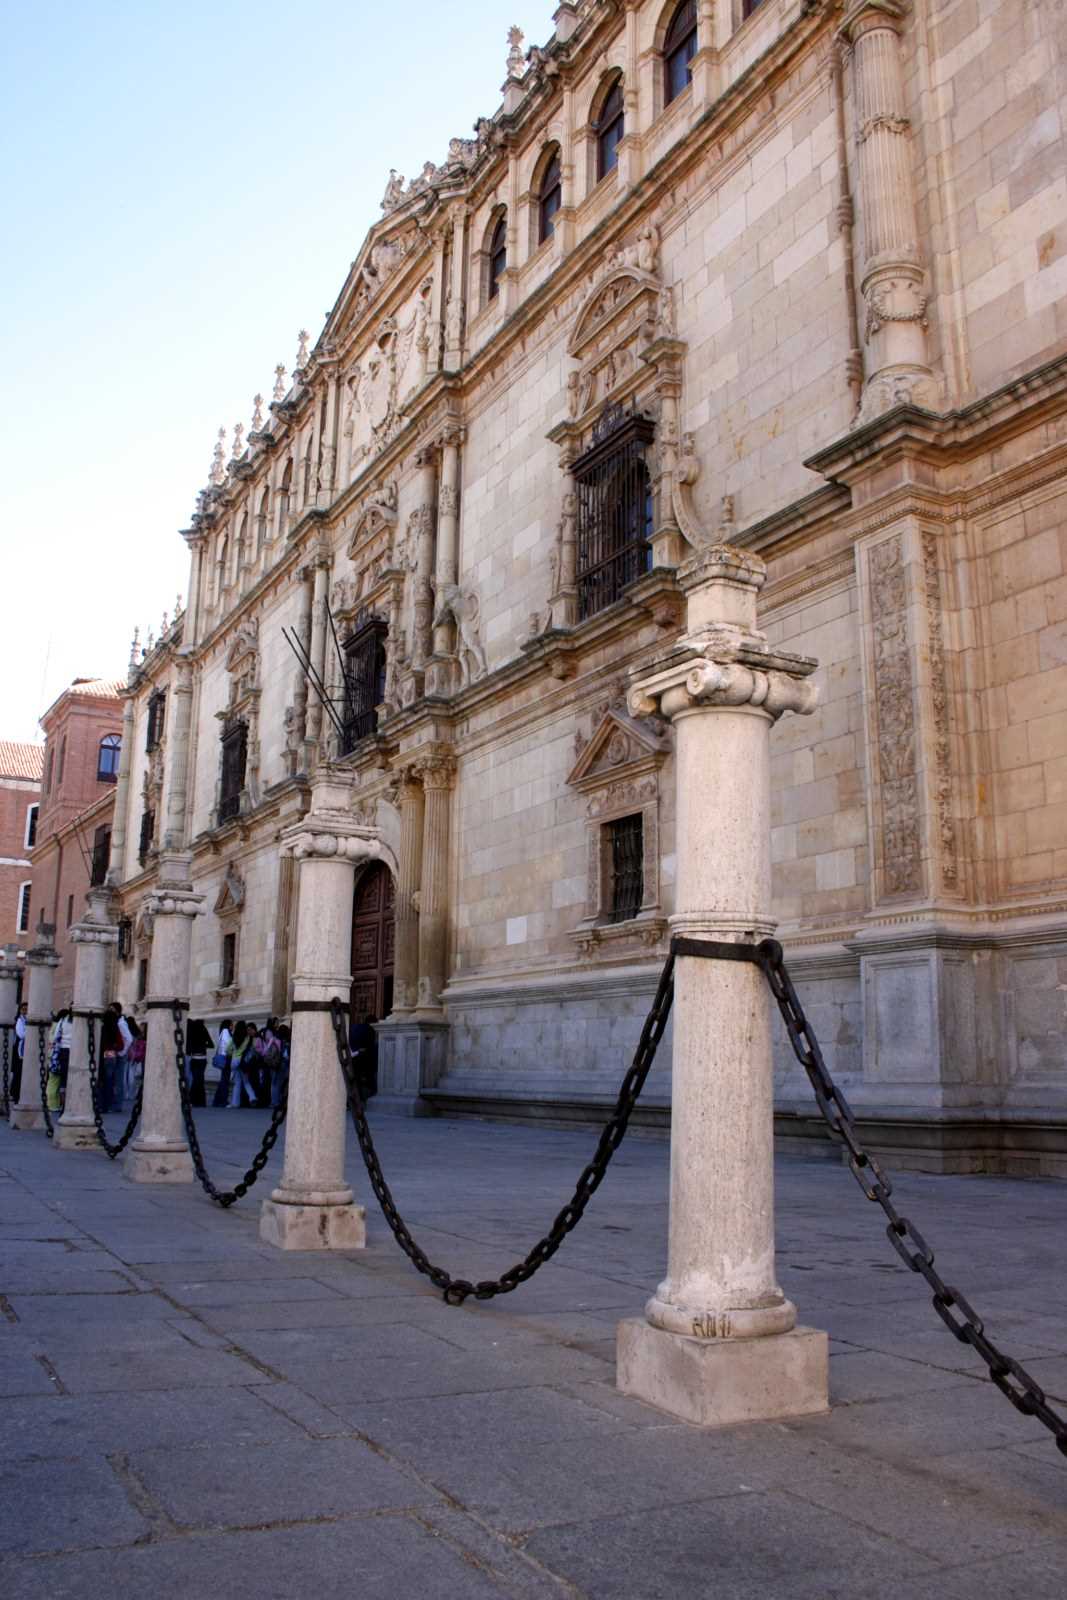 The University of Alcalá